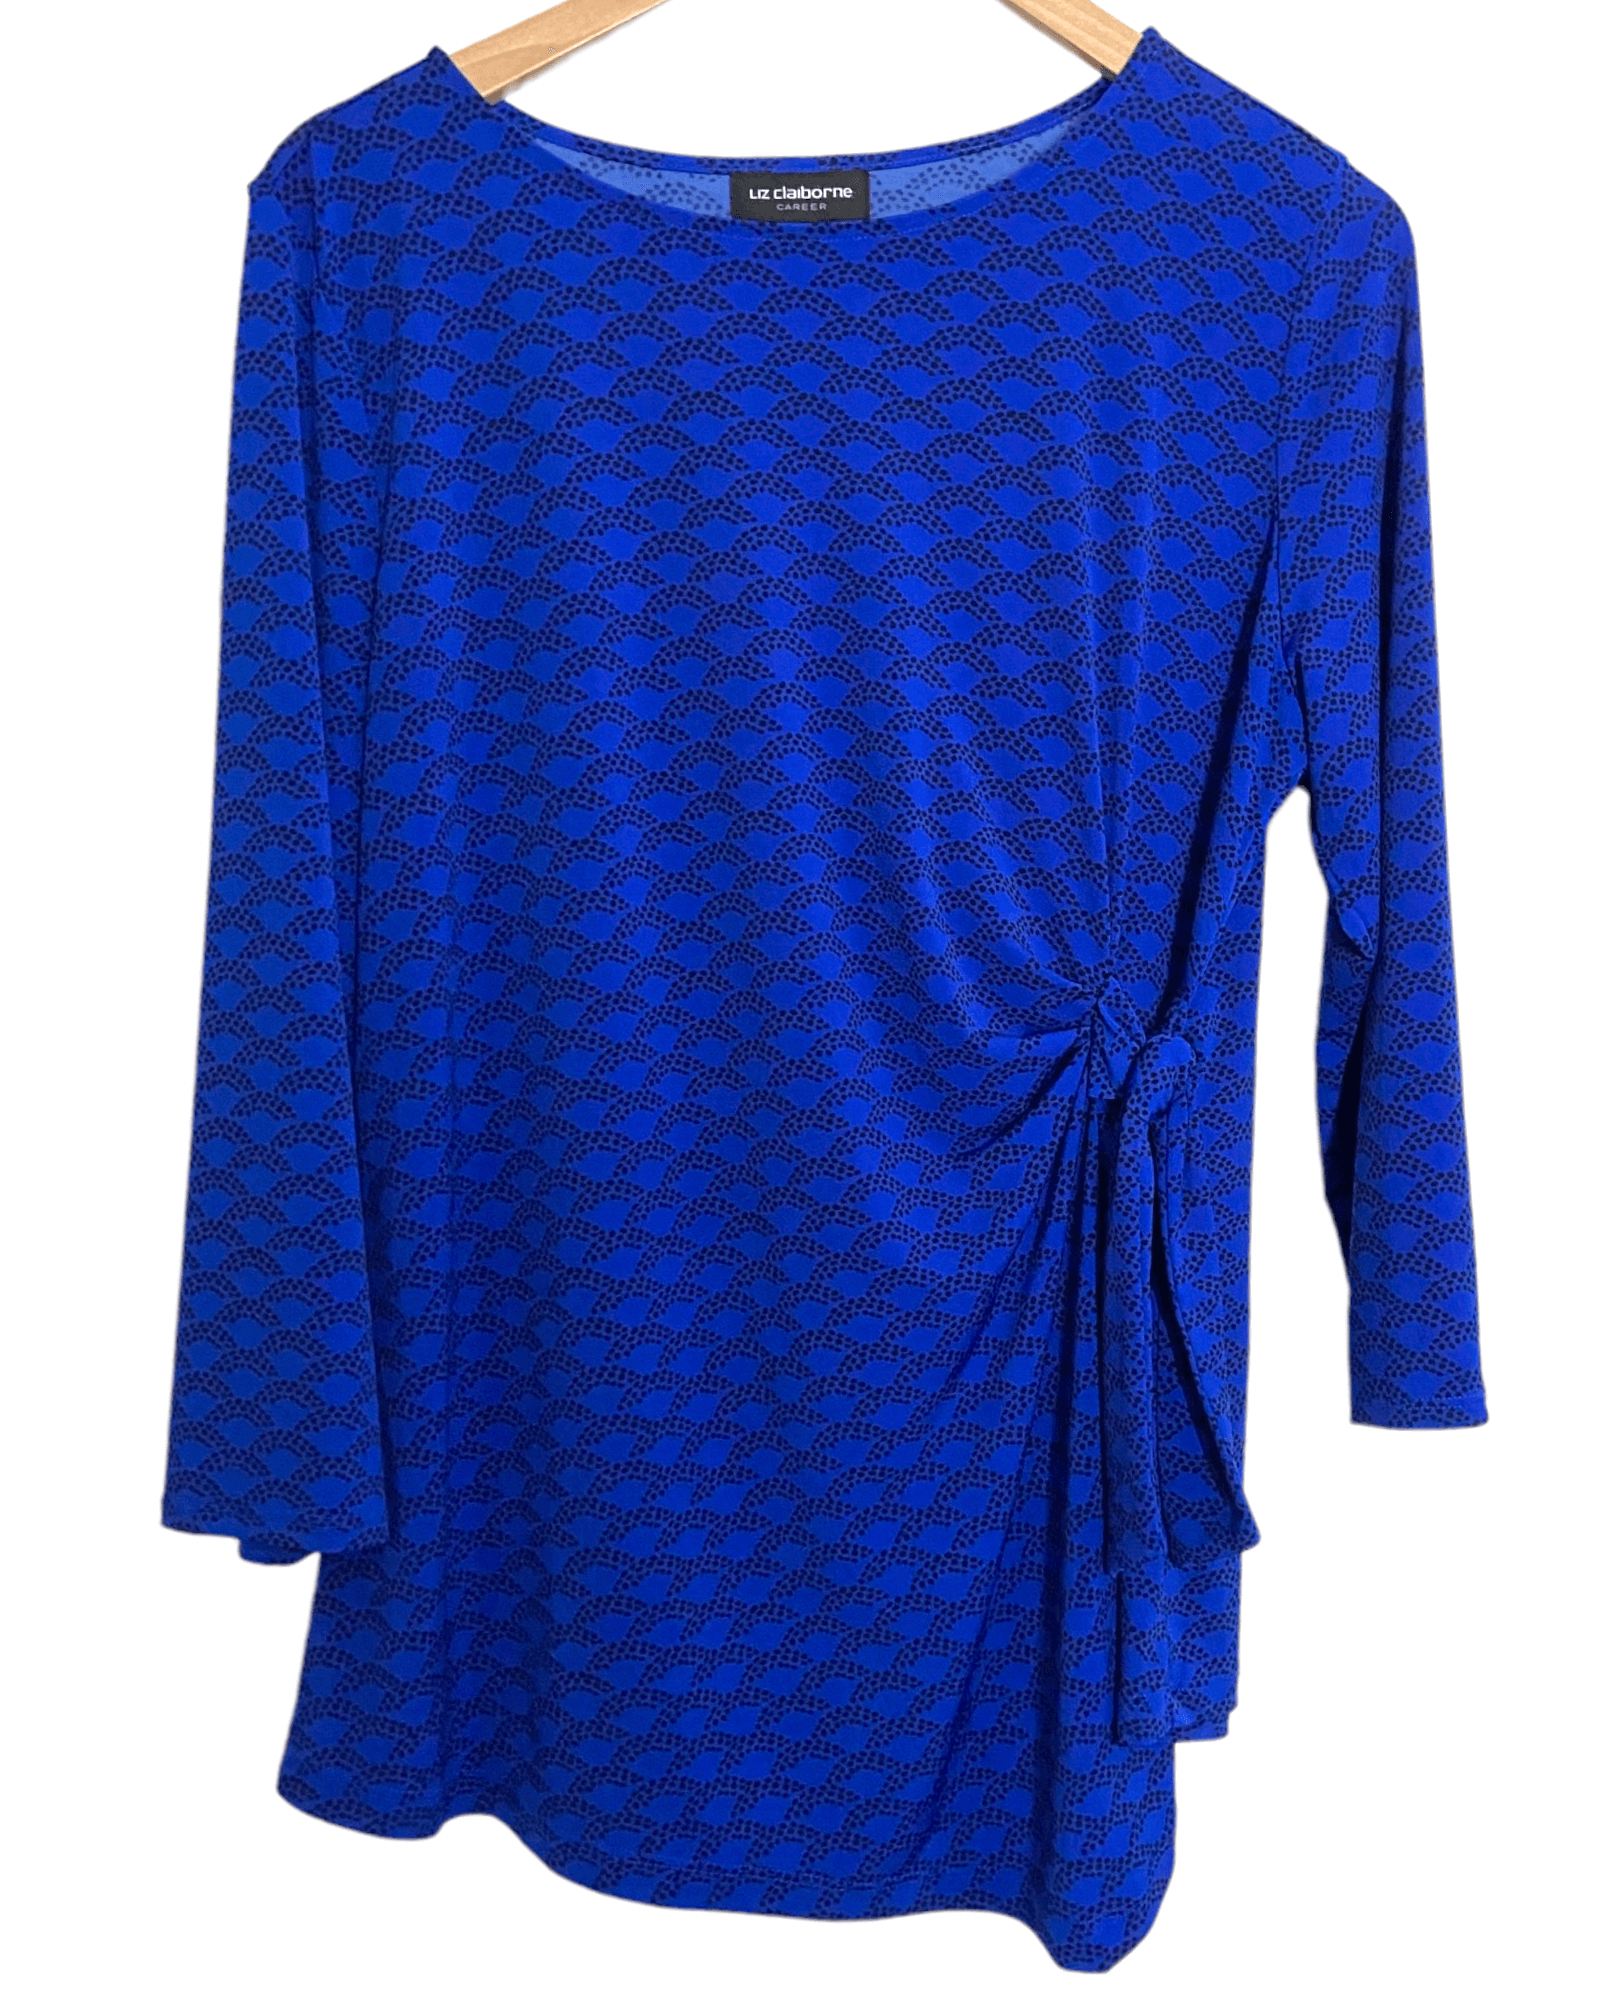 Bright Winter LIZ CLAIBORNE azure blue print side tie blouse top